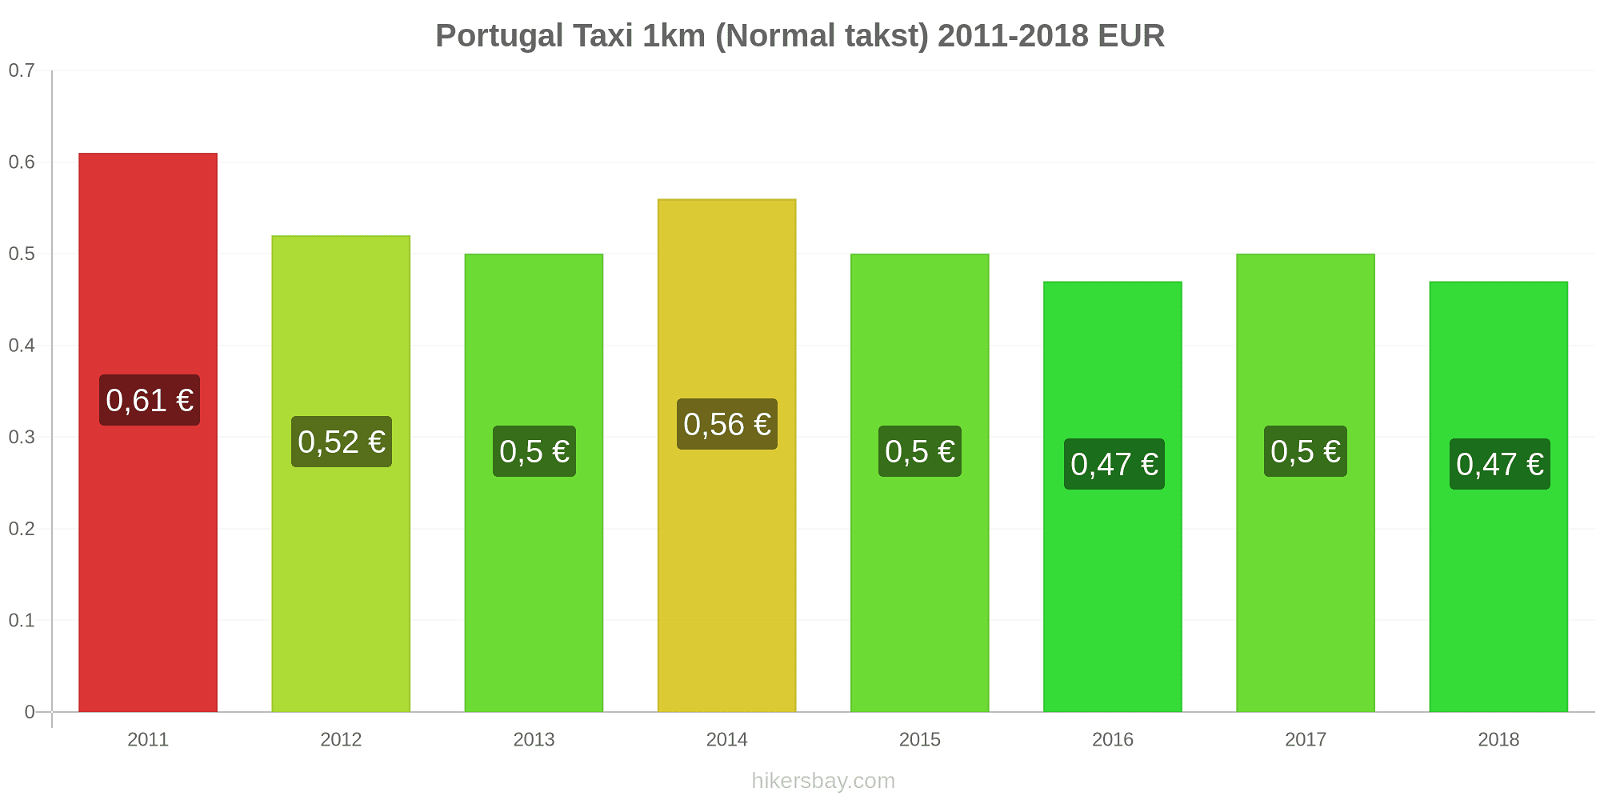 Portugal prisændringer Taxi 1km (normal takst) hikersbay.com